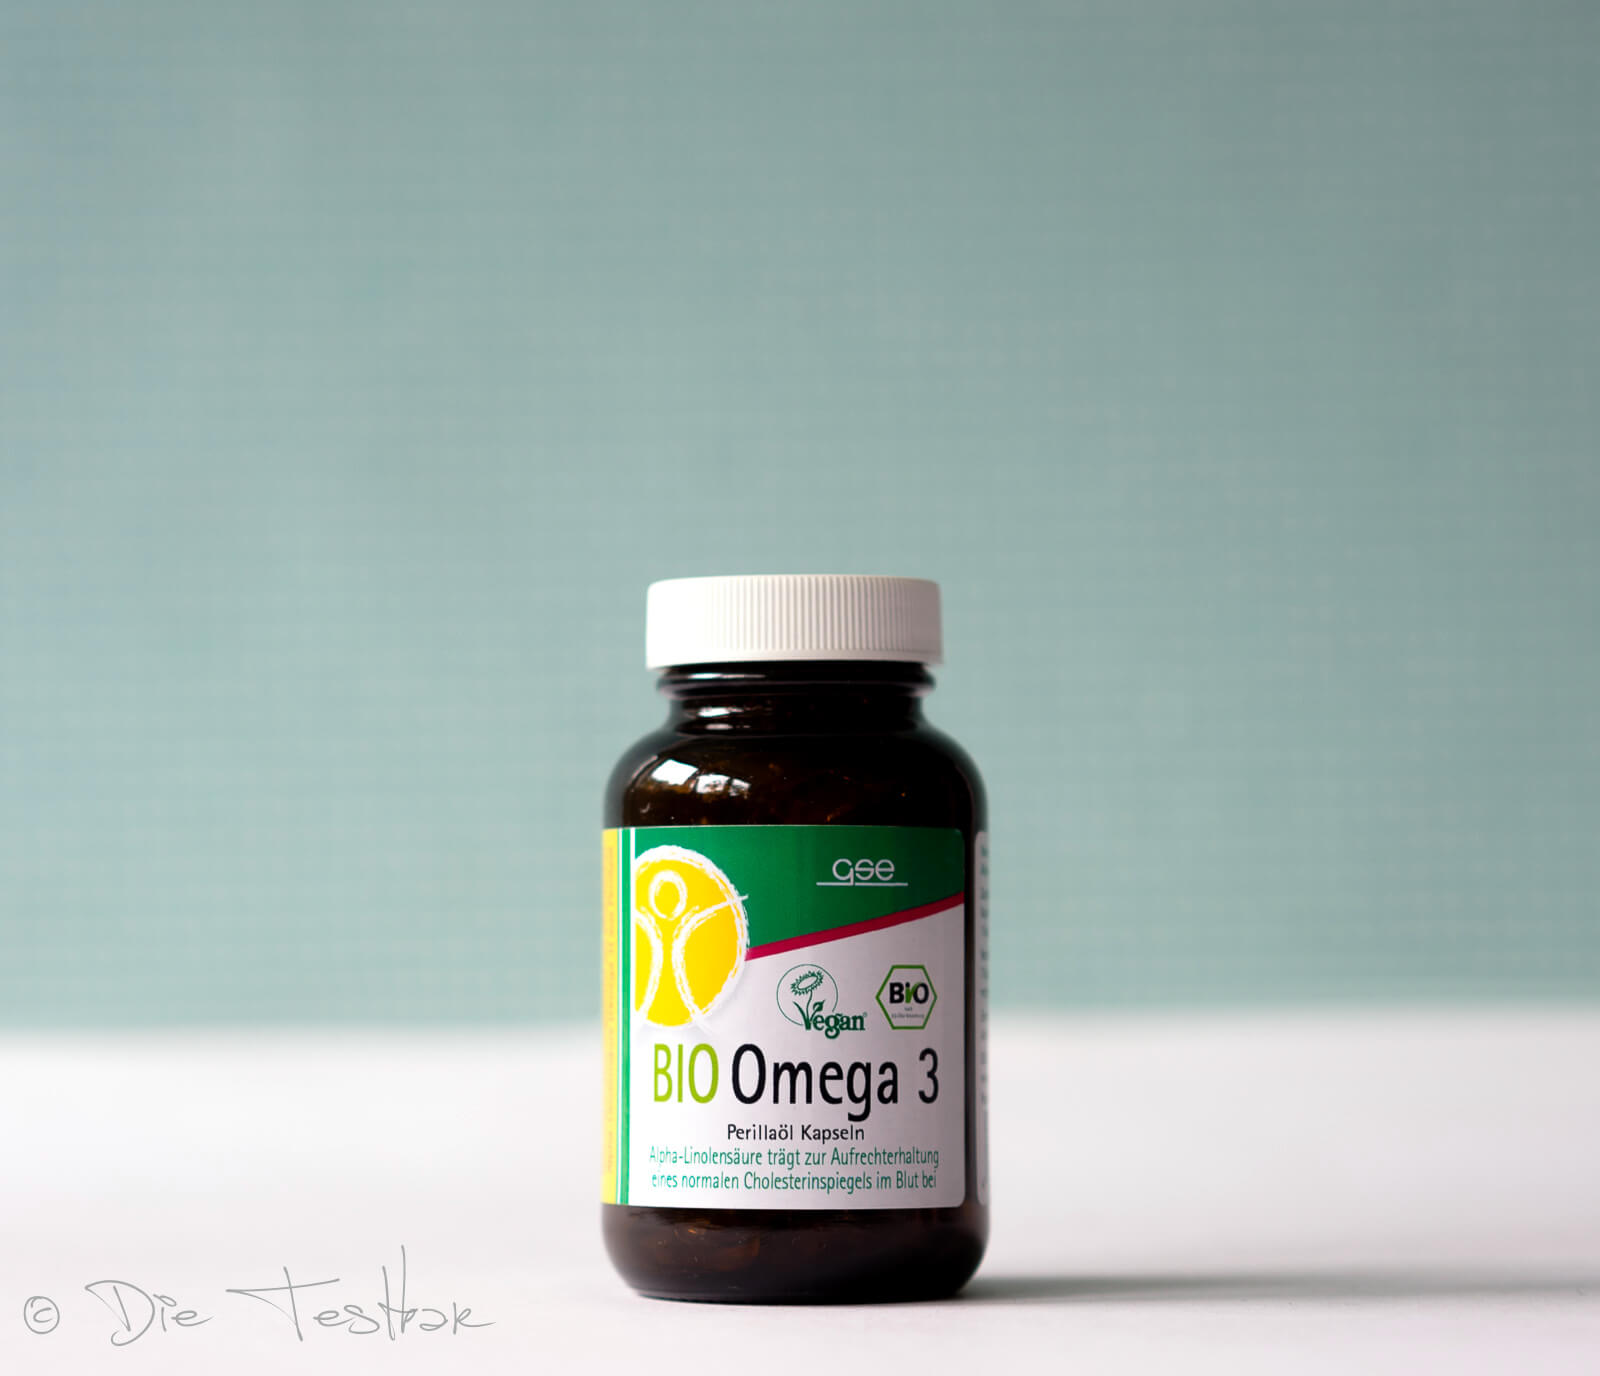 Omega 3 - Perillaöl Kapseln (Bio)